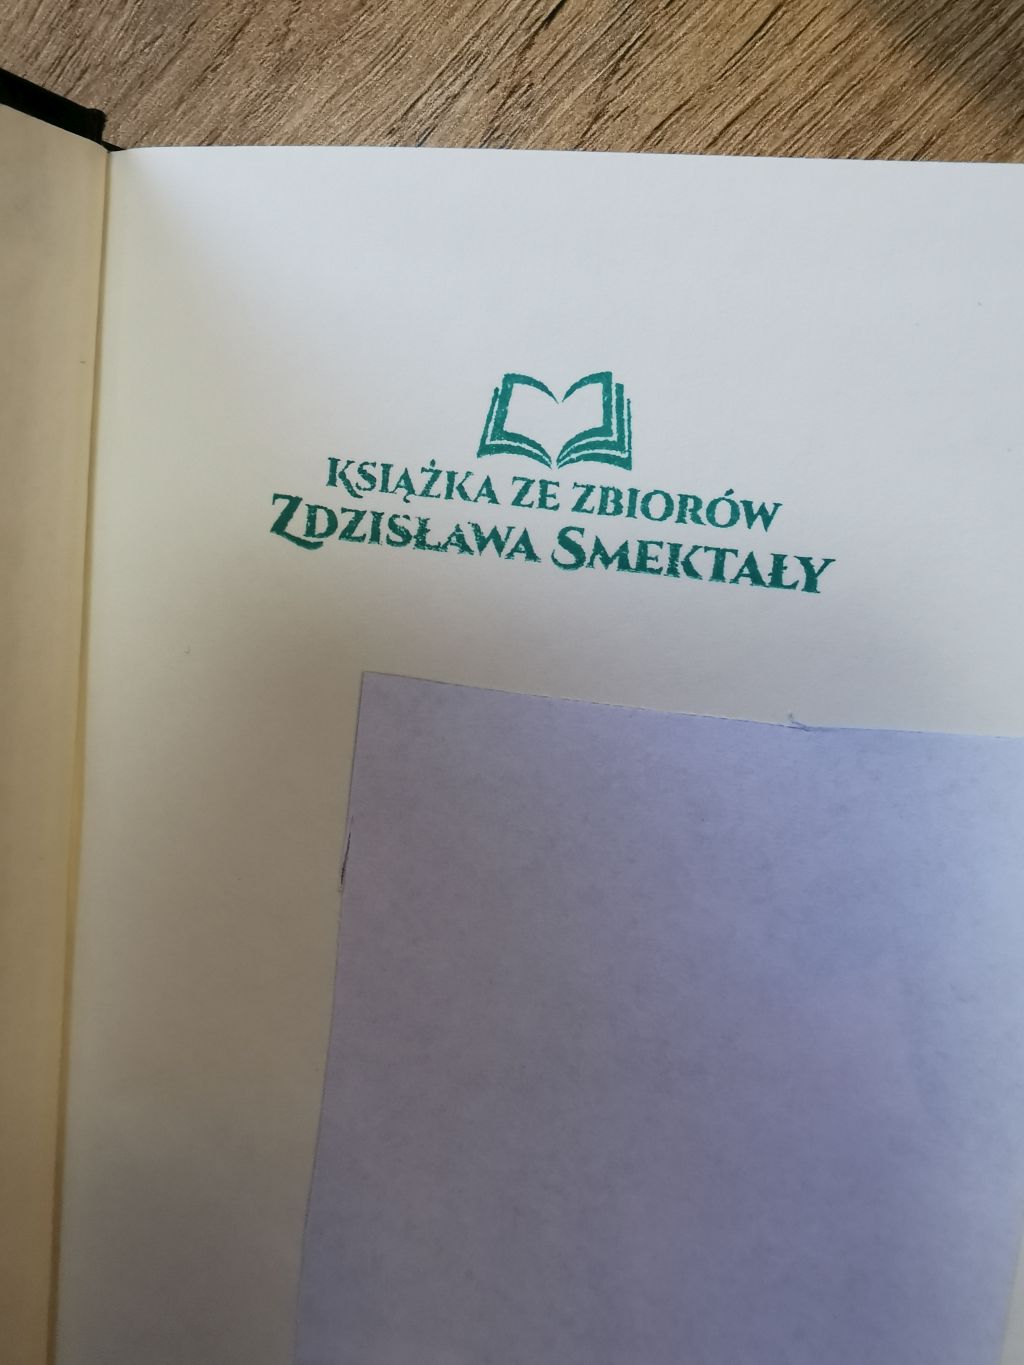 Książka z księgozbioru Zdzisława Smektały z okazjonalną pieczęcią „Książka ze zbiorów Zdzisława Smektały”.